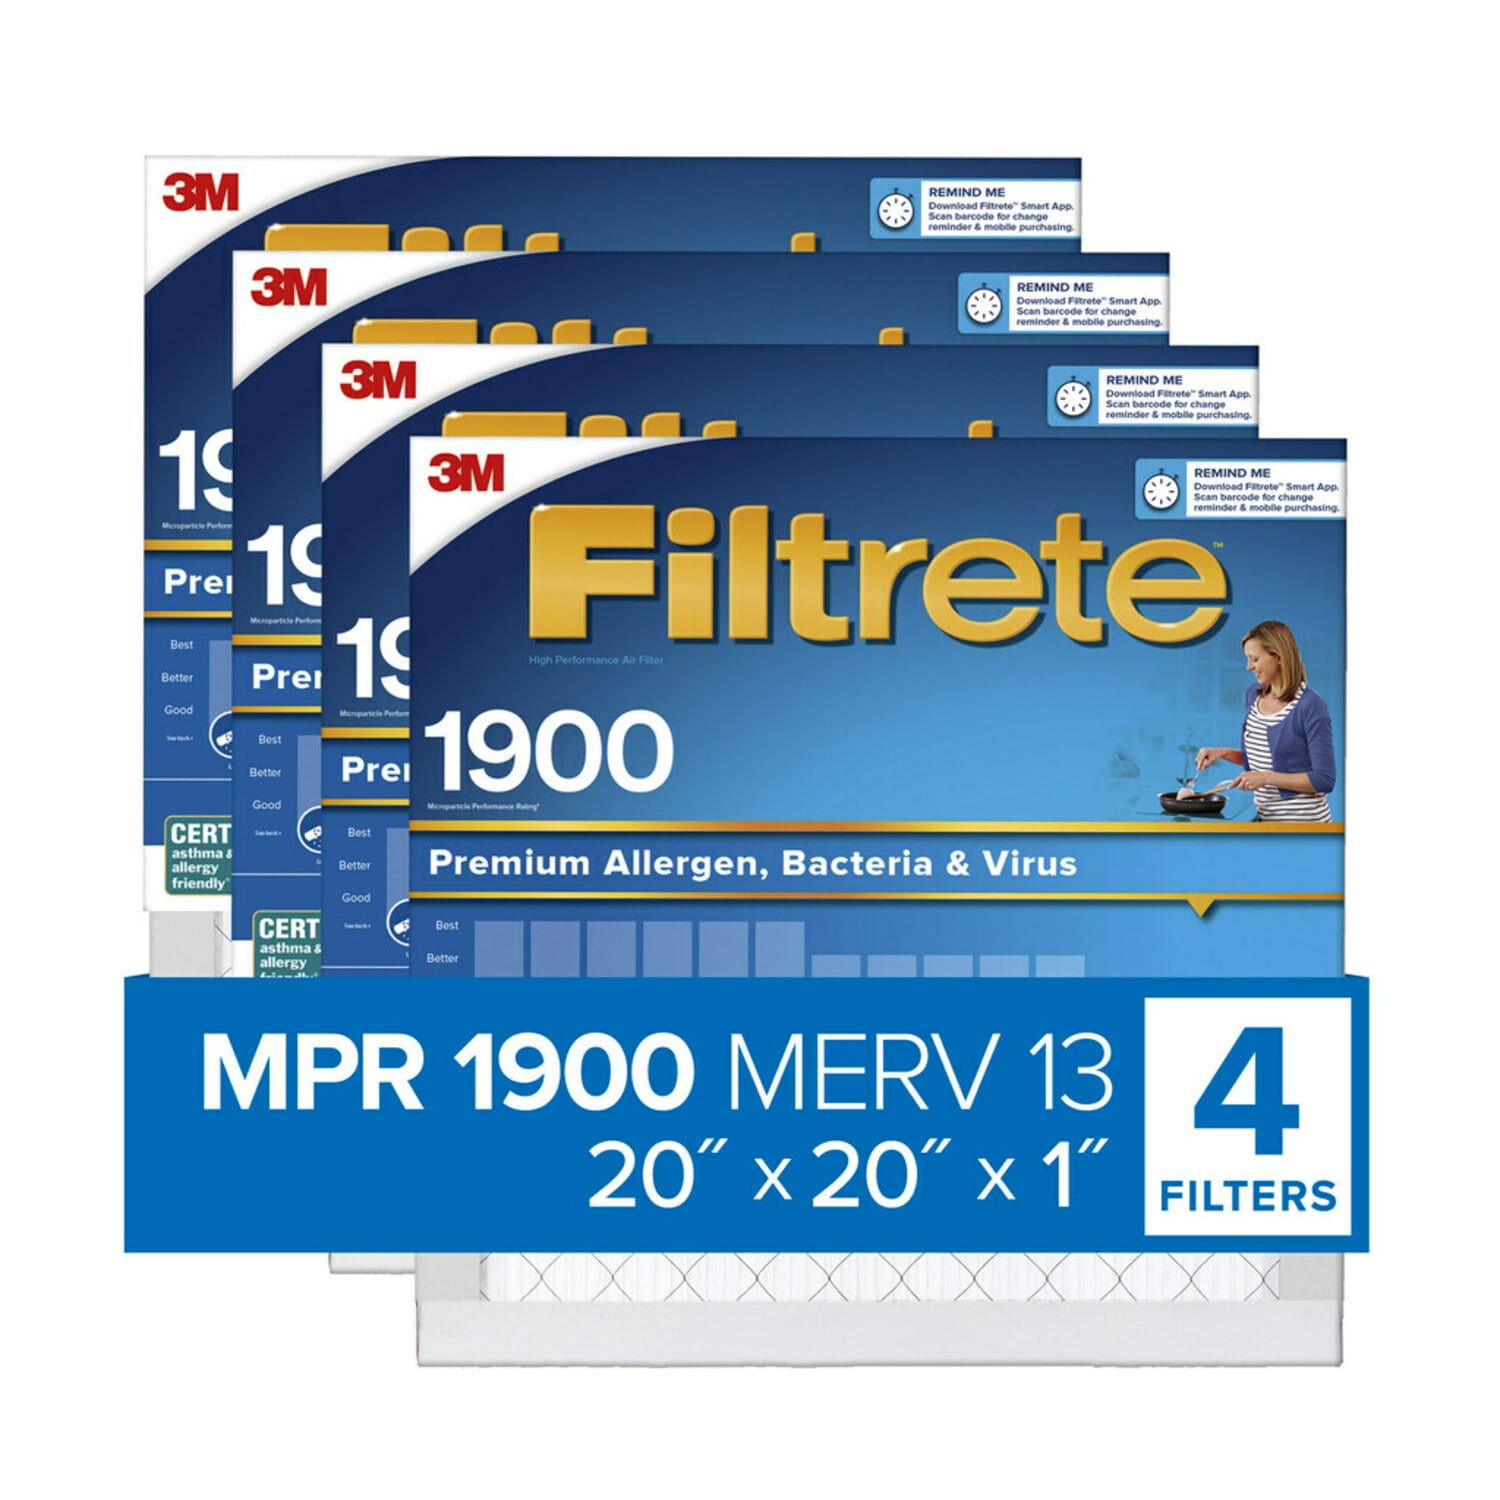 7100222949 - Filtrete High Performance Air Filter 1900 MPR UA02-4, 20 in x 20 in x 1 in (50.8 cm x 50.8 cm x 2.5 cm)